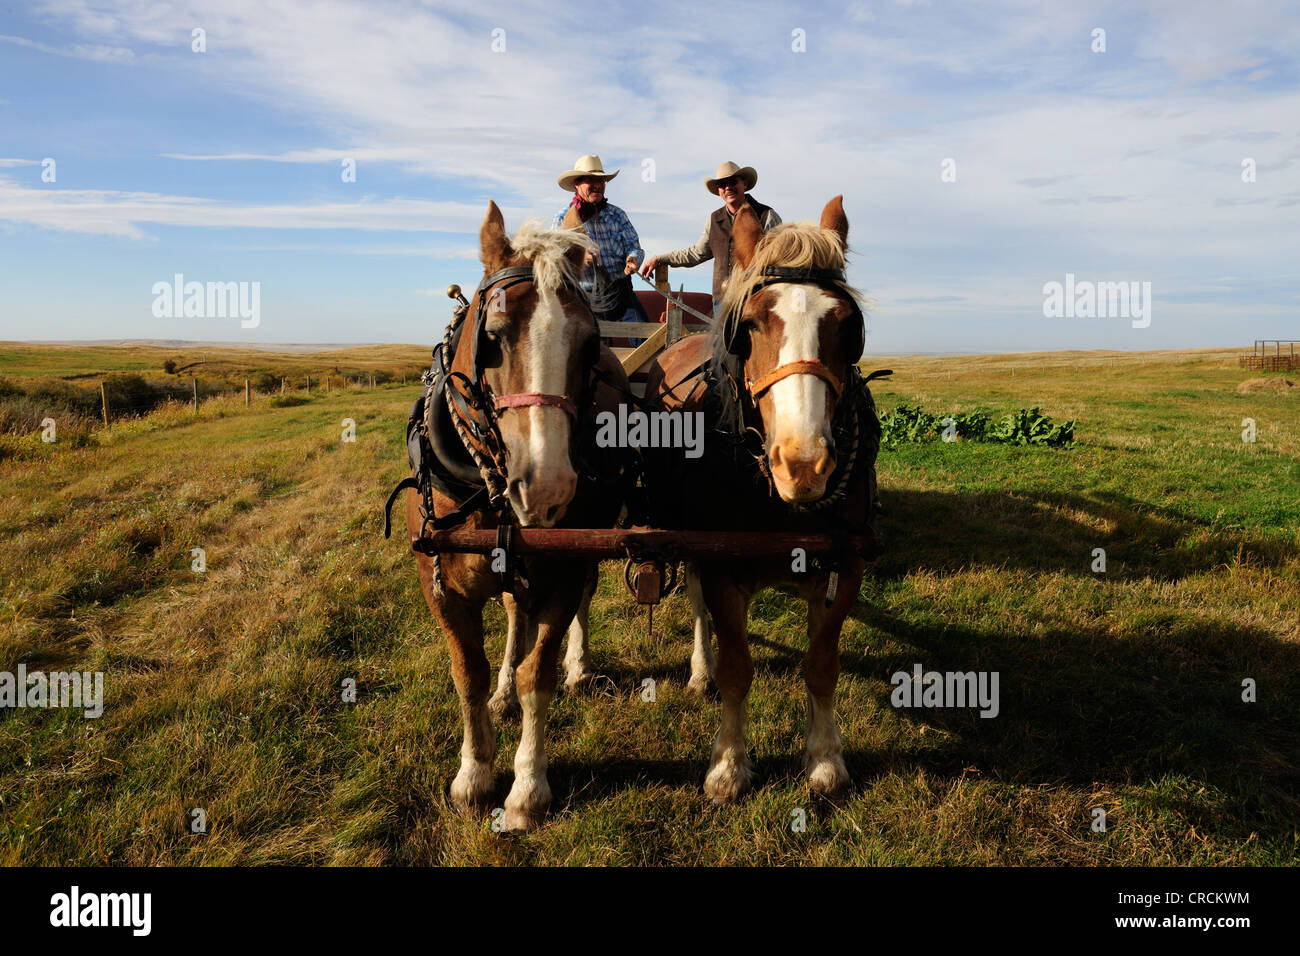 Deux cowboys un cheval volant panier, Saskatchewan, Canada, Amérique du Nord Banque D'Images